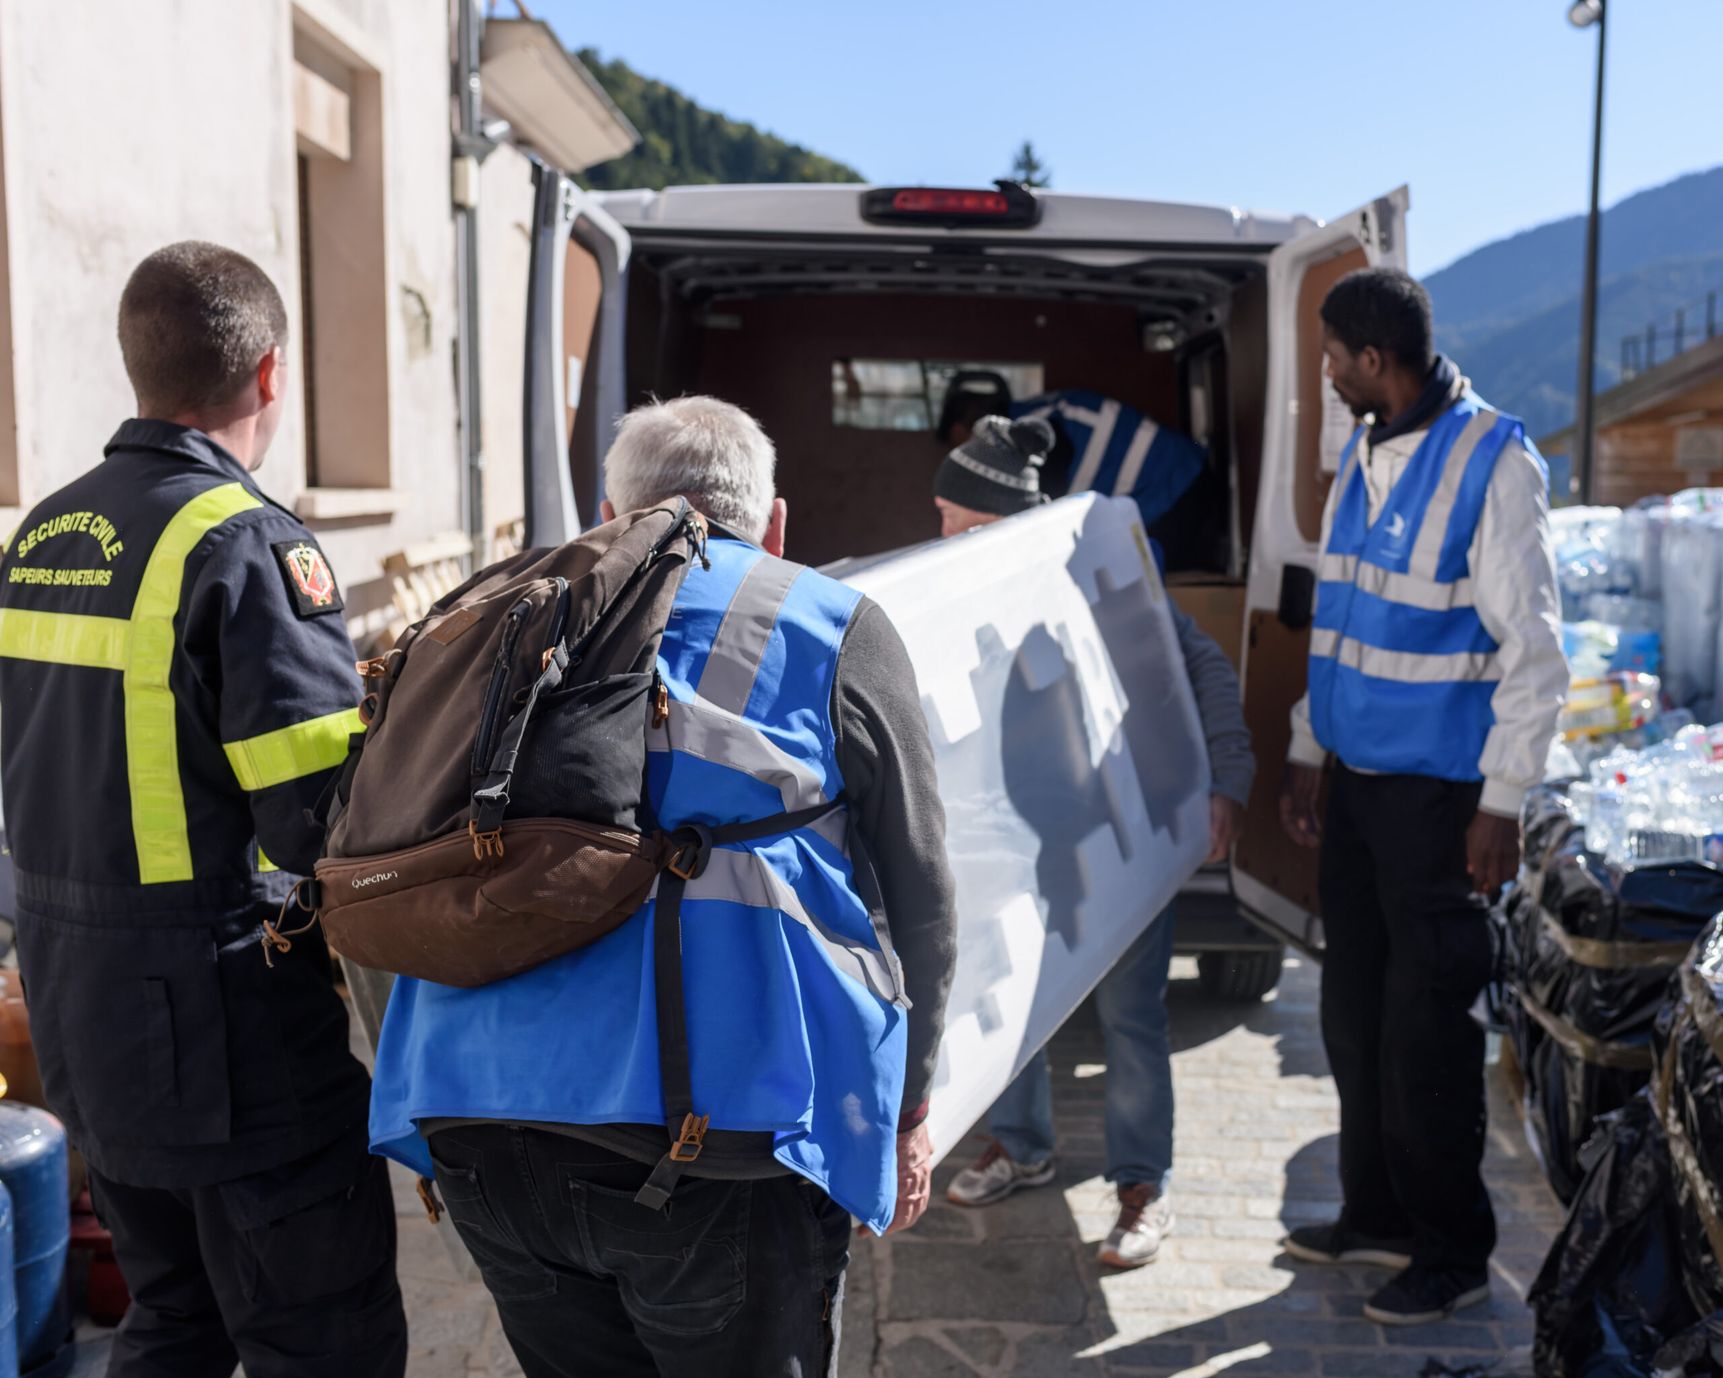 Réception de l'aide matérielle à Saint-Martin-Vésubie. Les bénévoles chargent de l'équipement électroménager.